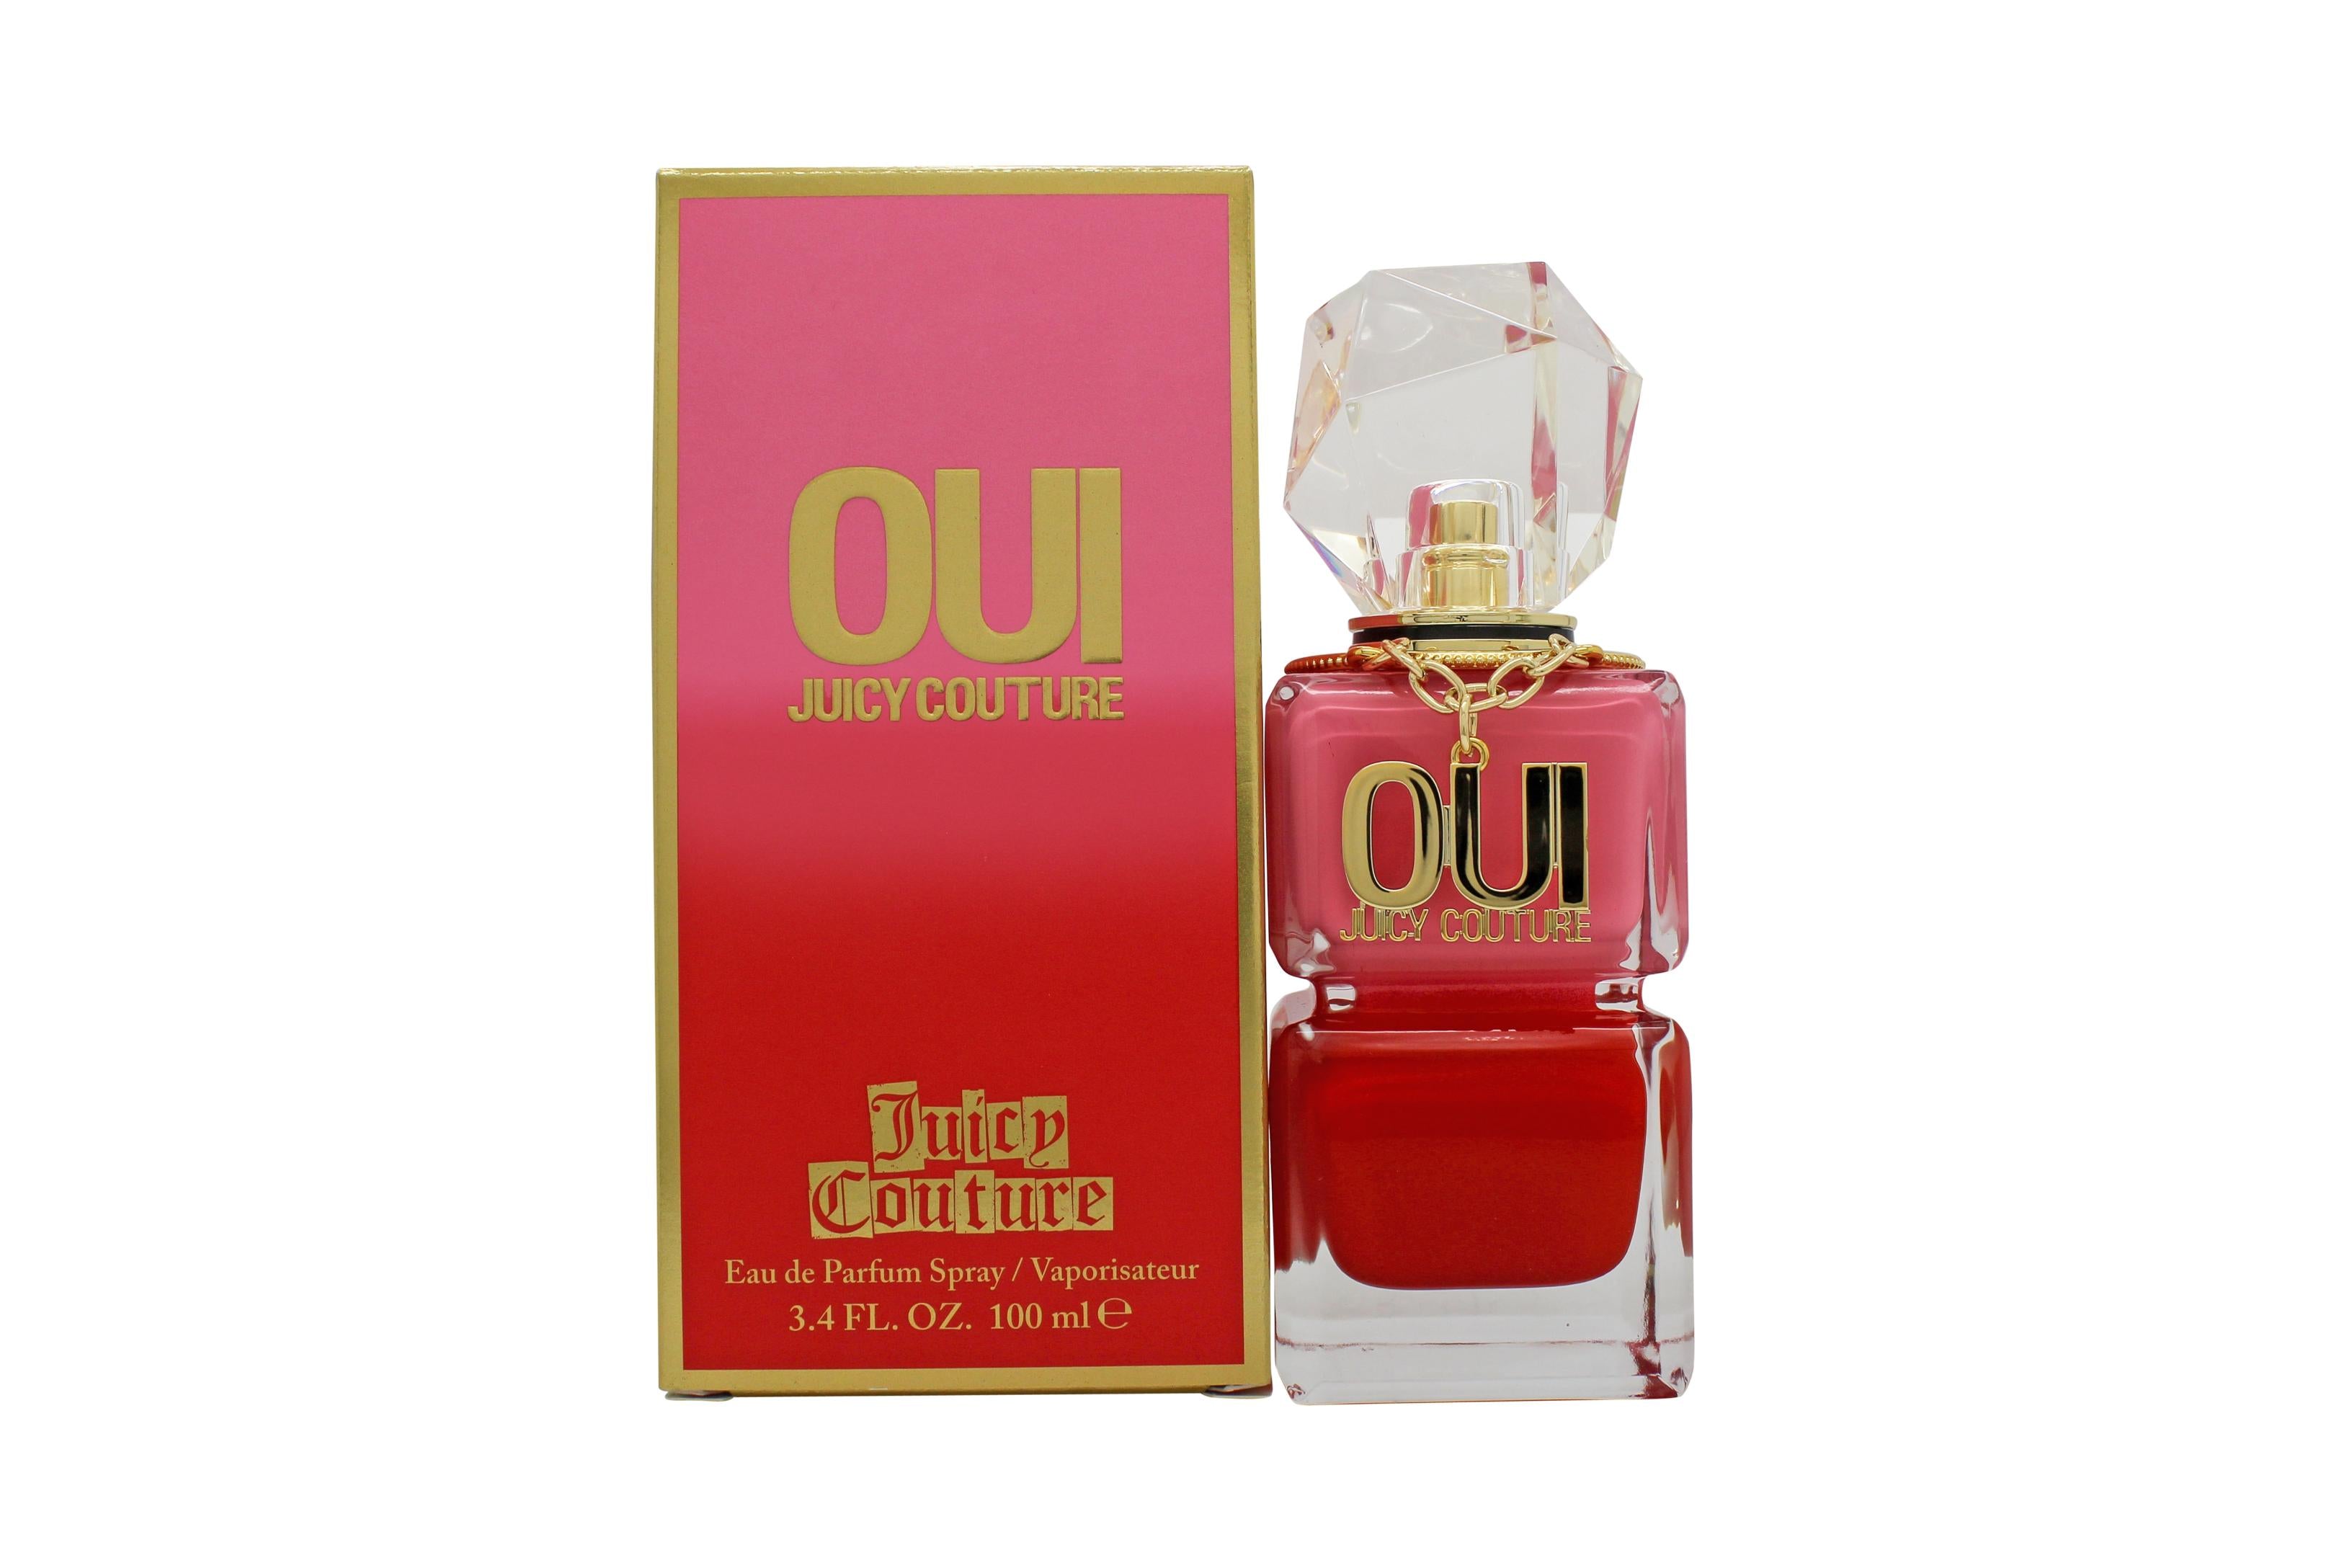 View Juicy Couture Oui Eau de Parfum 100ml Spray information